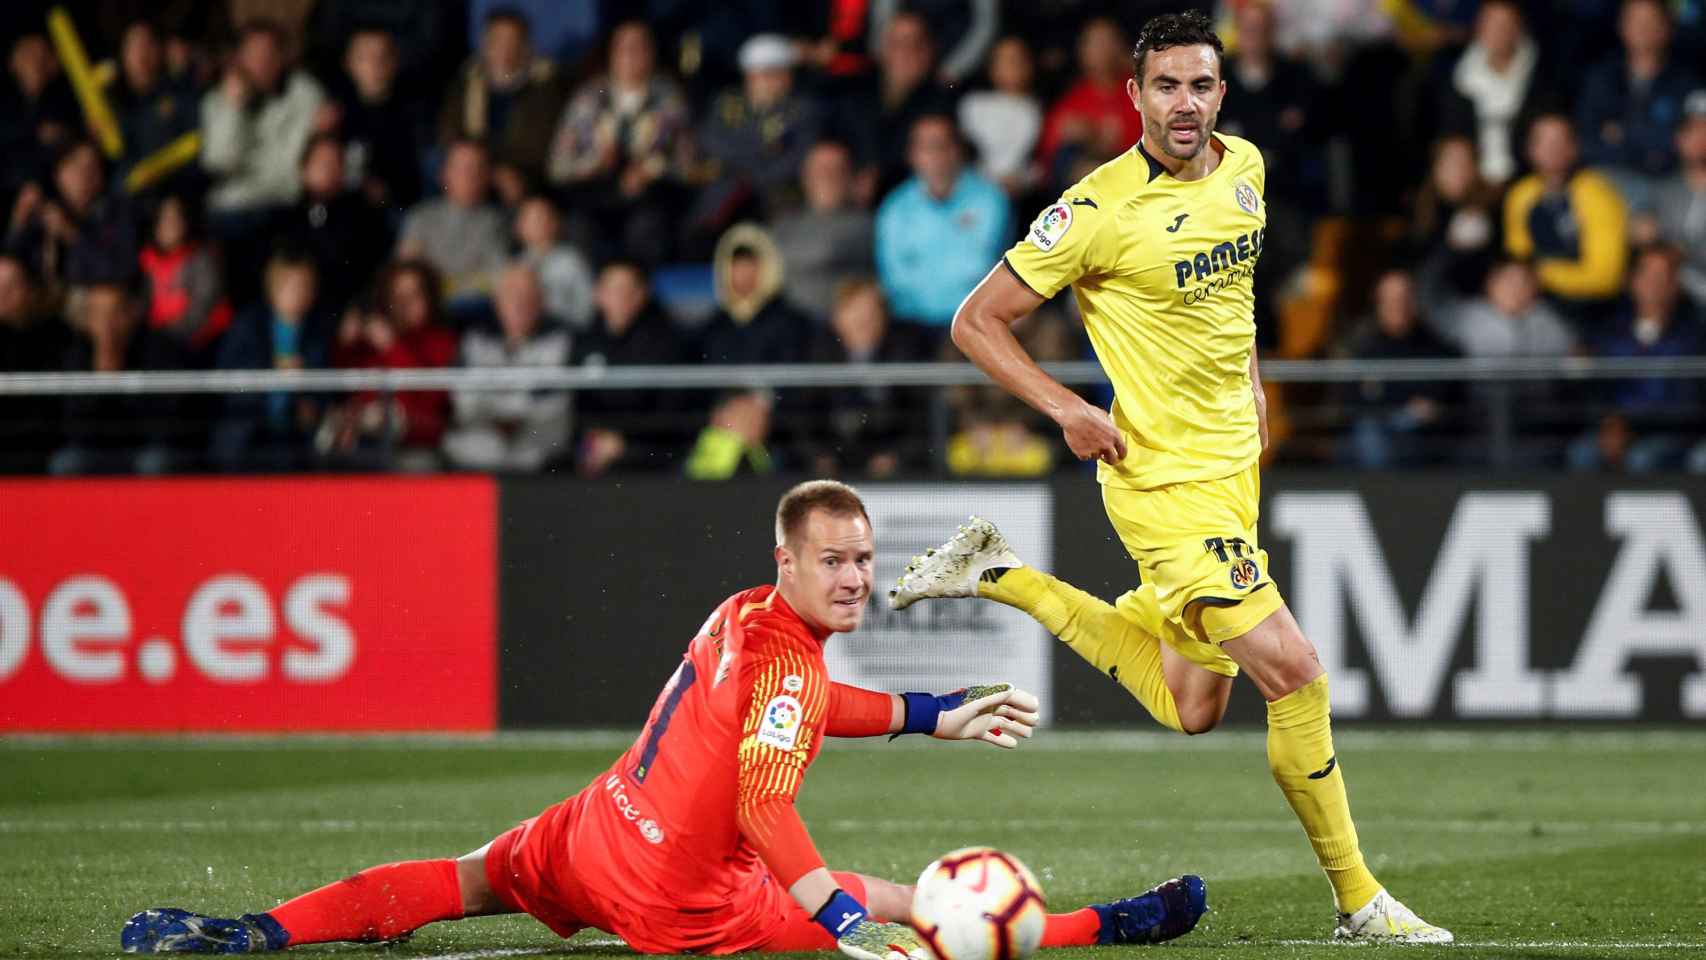 Iborra superó a Ter Stegen para anotar el tercer gol del Villarreal ante el Barça / EFE